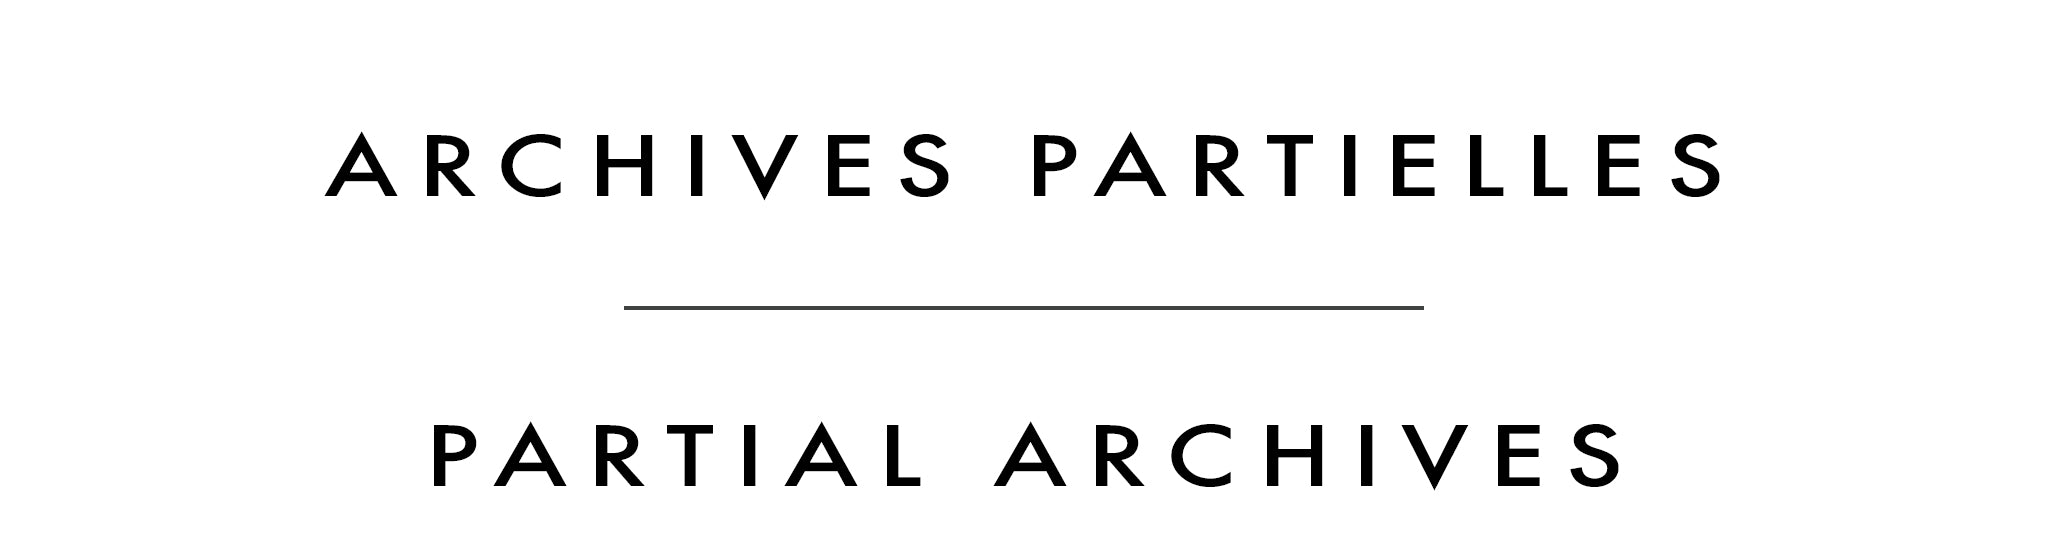 Archives partielles | Partial Archives | St-Gilles